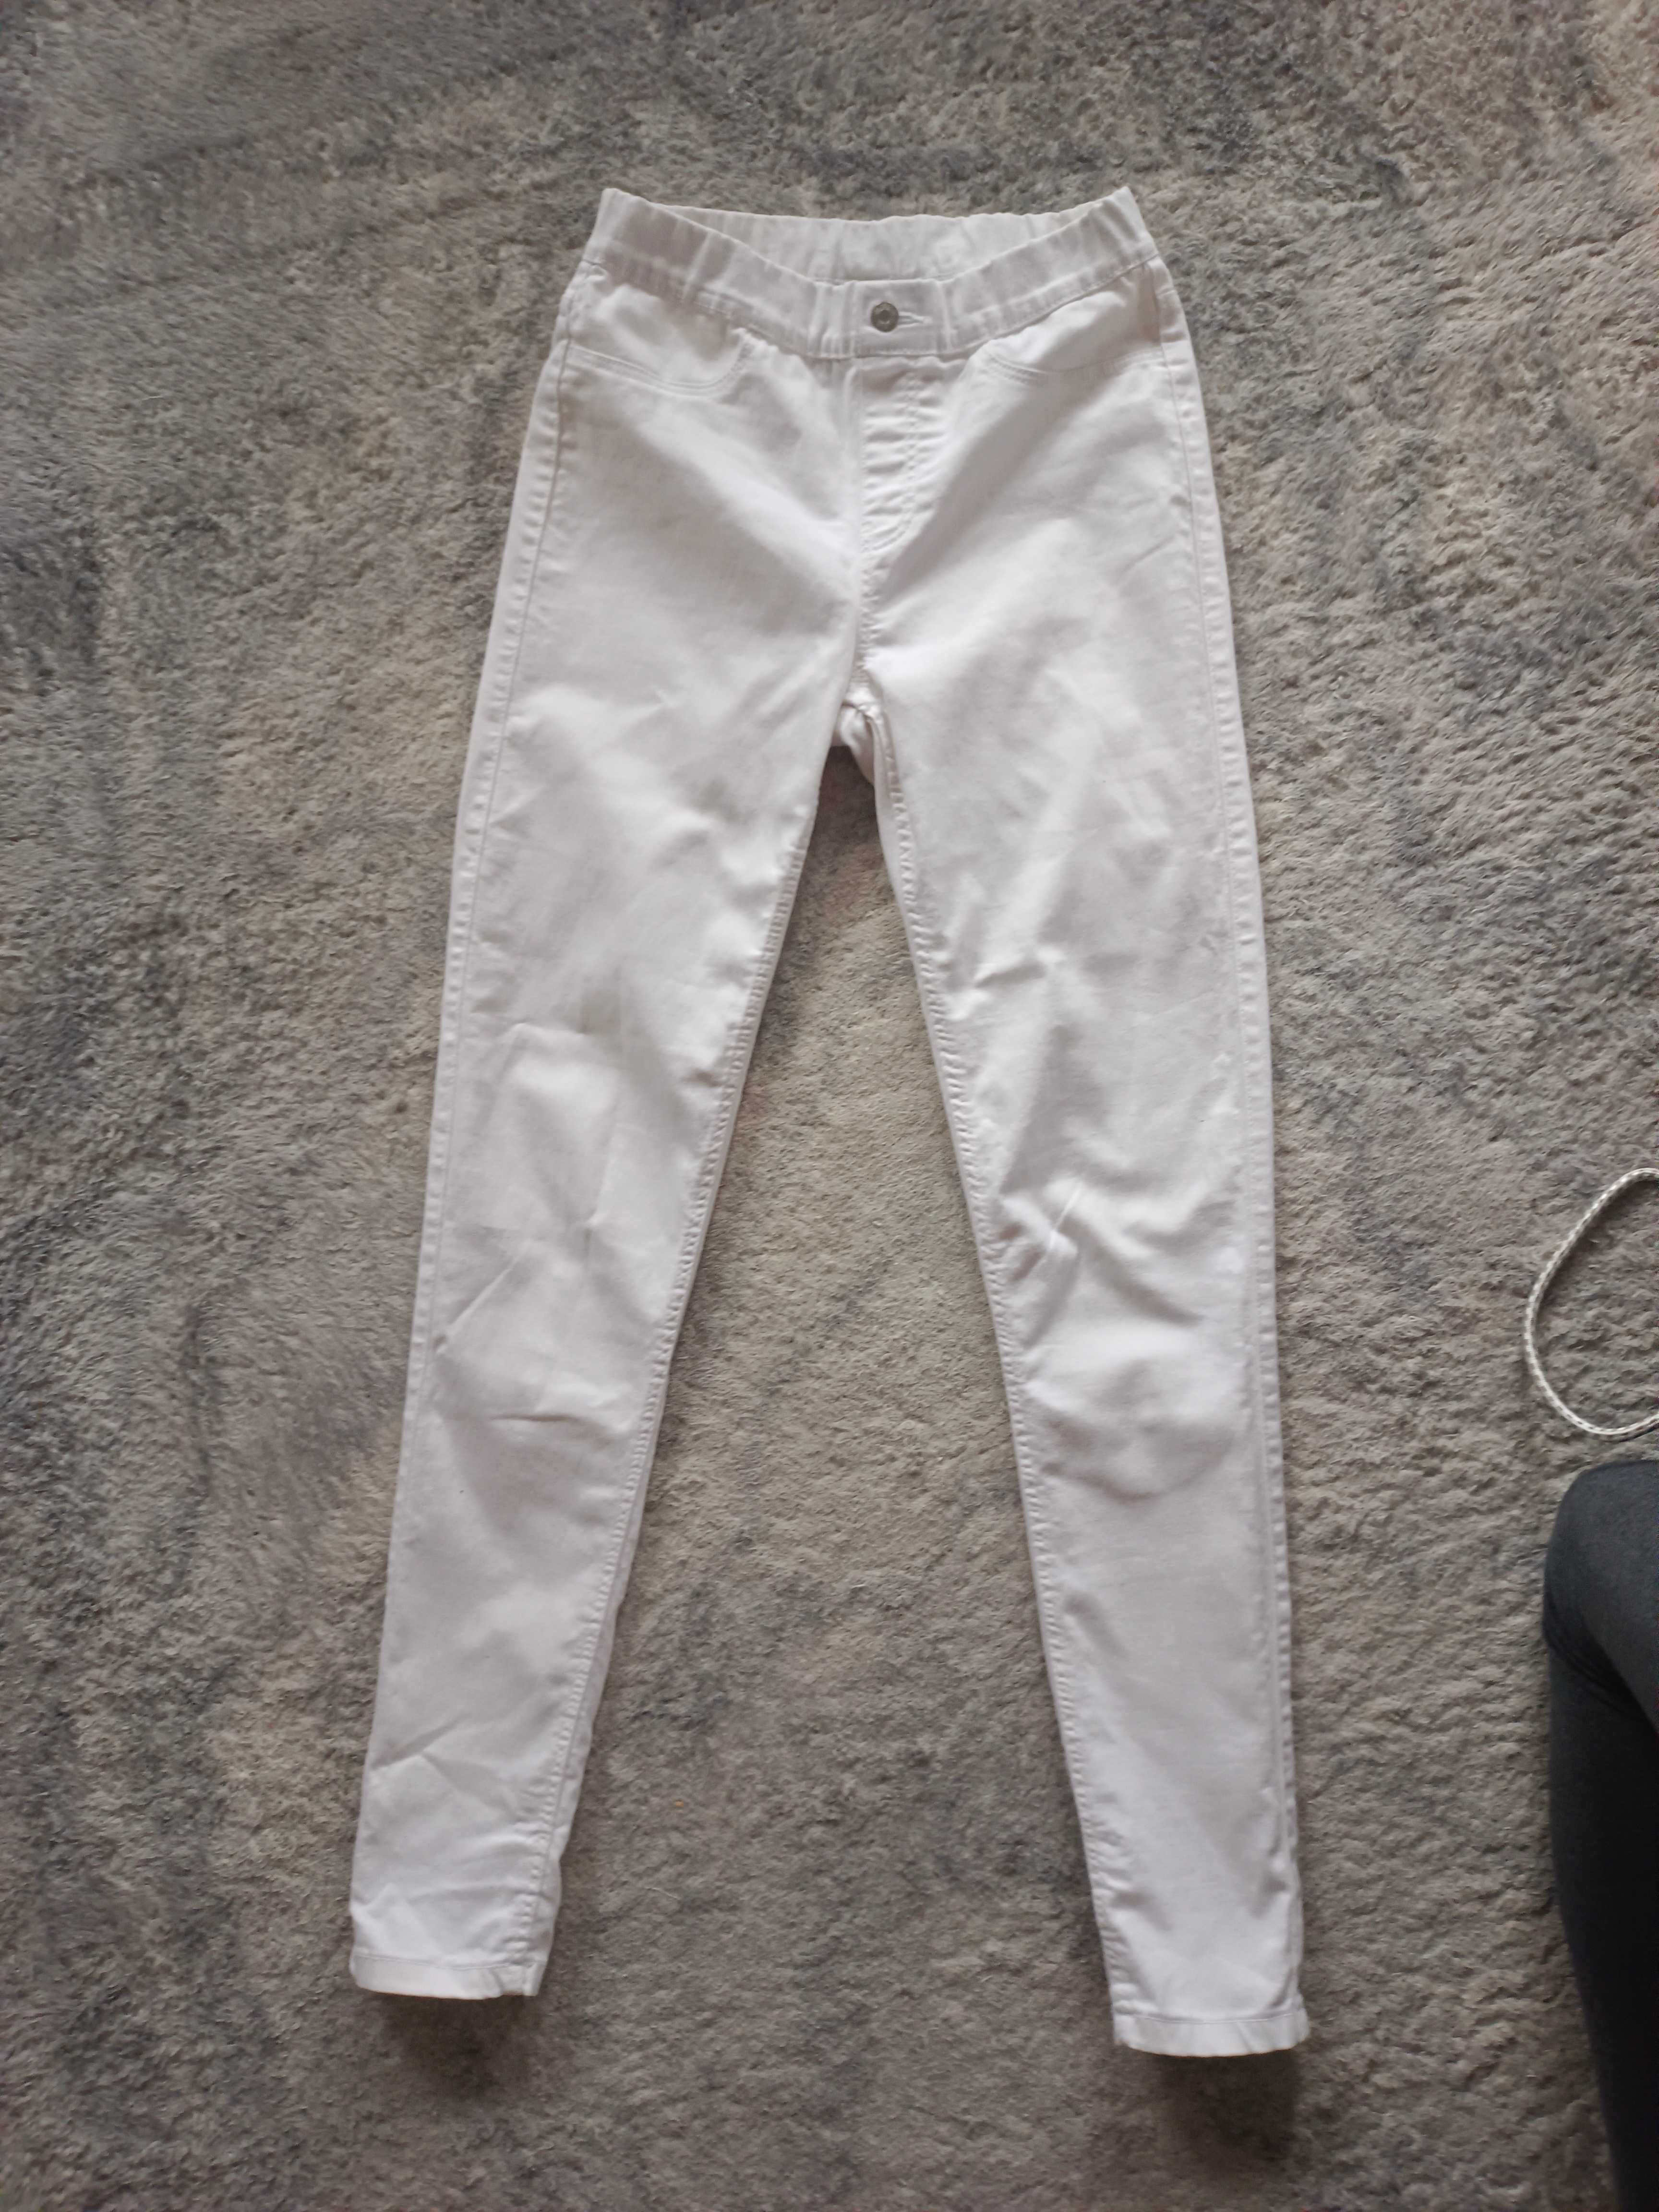 Jegginsy białe Esmara 36,s miękki jeans, dopasowują się do figury